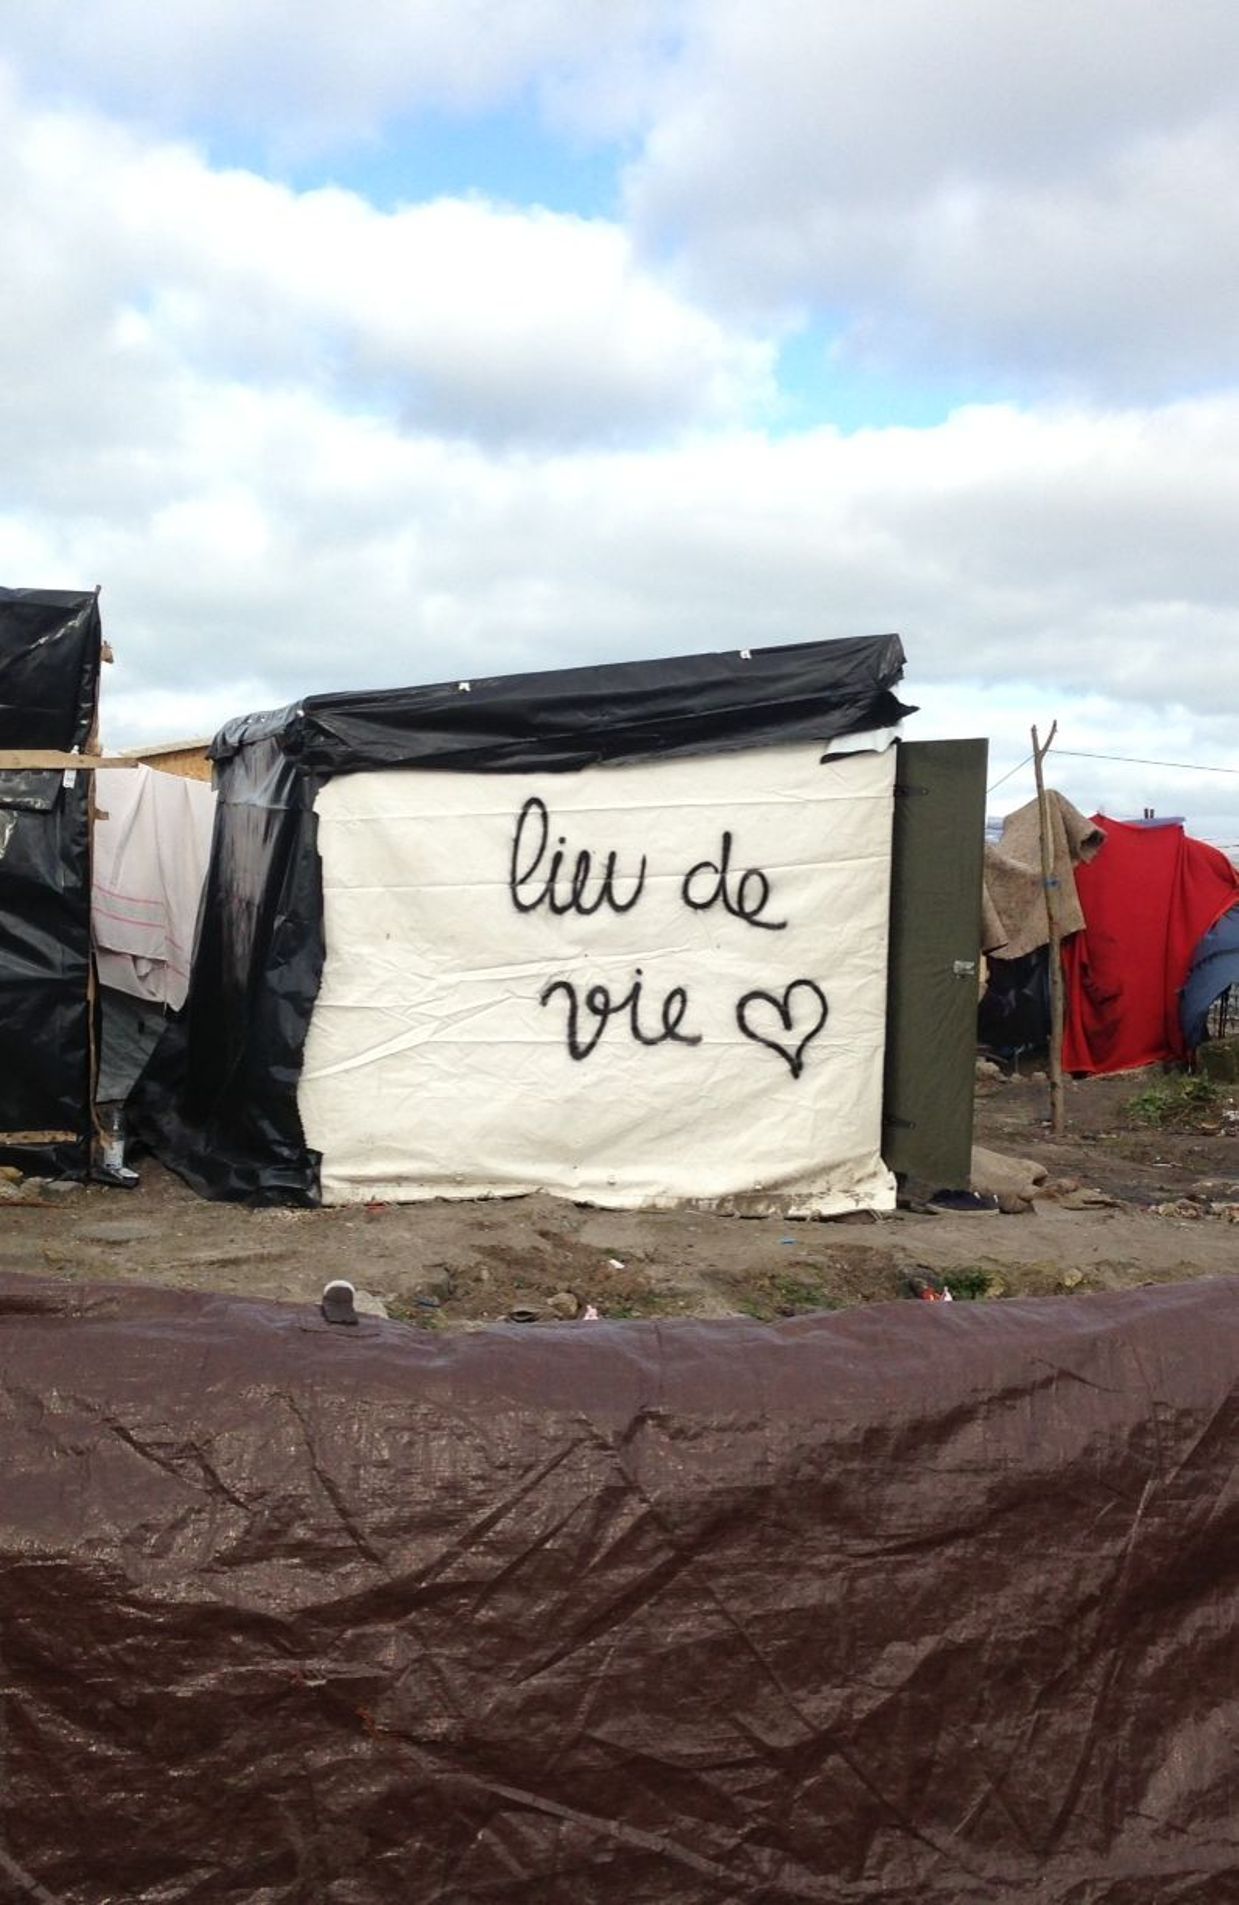 Démantèlement de la Jungle de Calais: jets de pierre, gaz et incendies